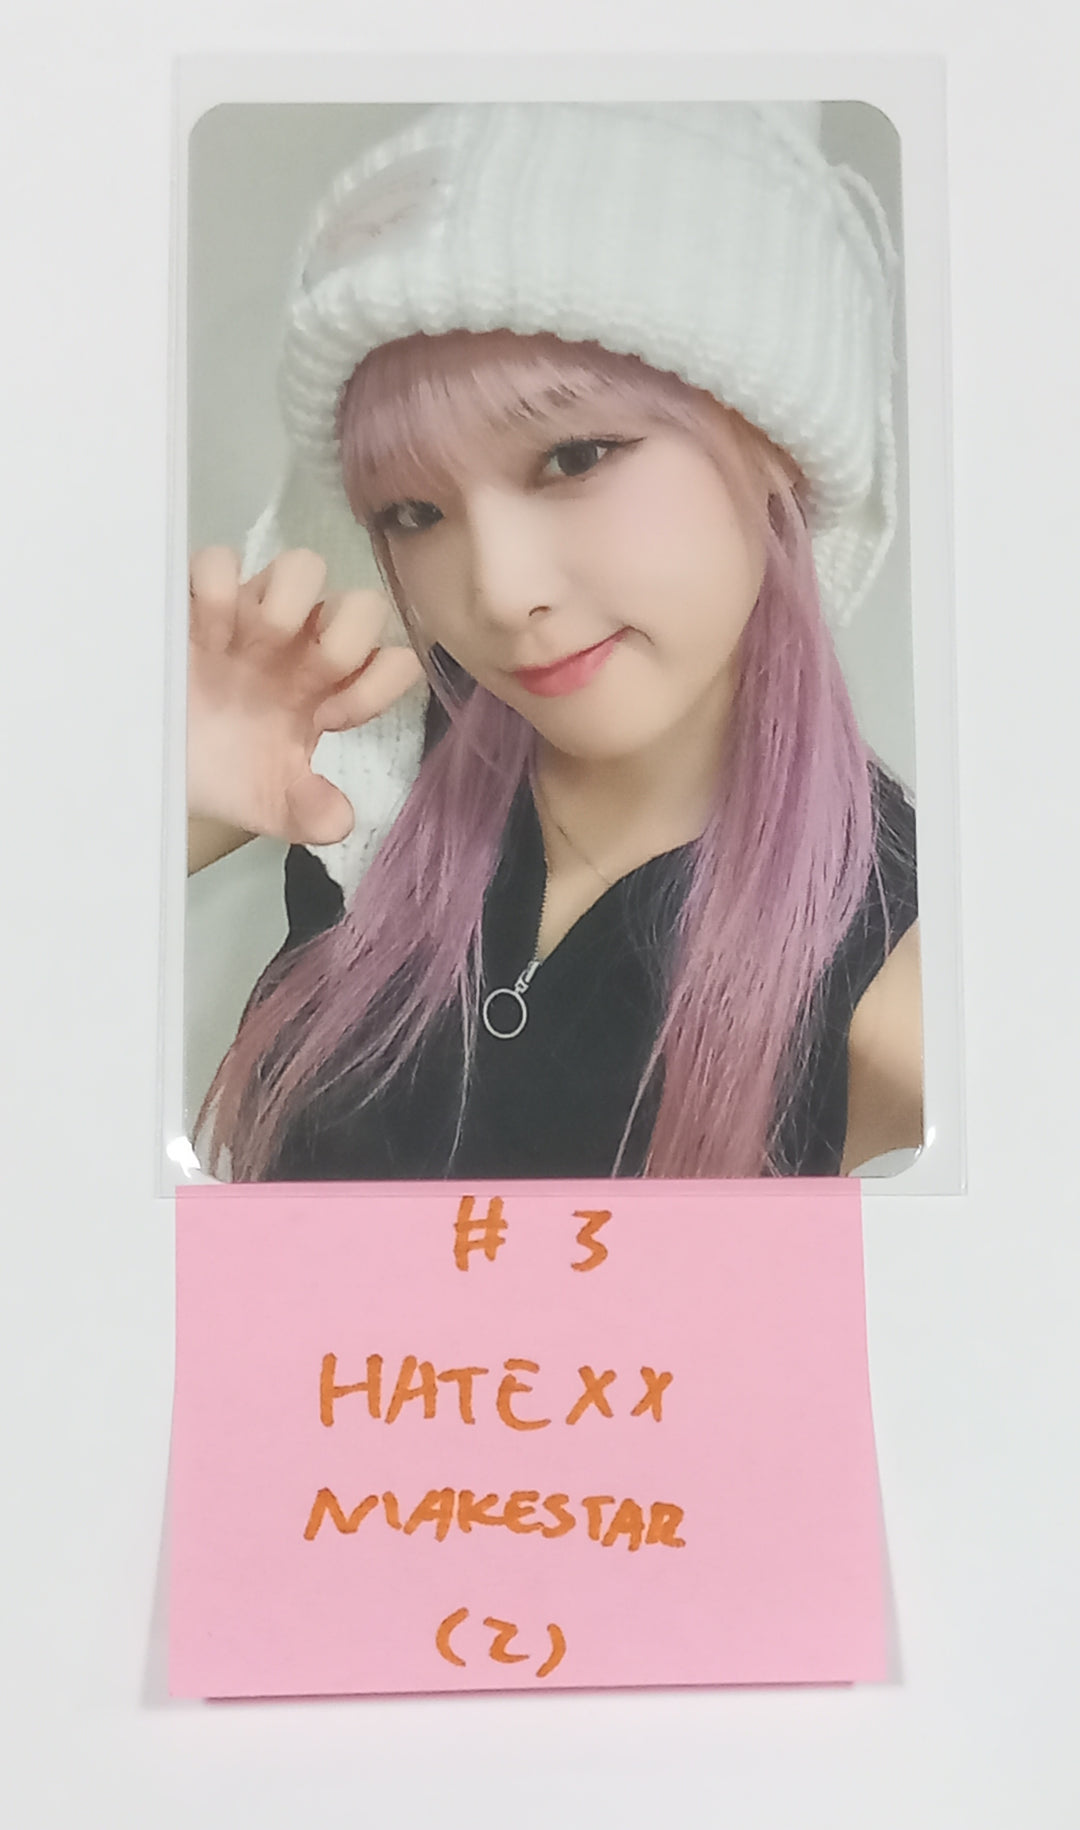 Yena "HATE XX" - Makestar Fansign Event Photocard Round 2 [Poca Ver.] [23.09.07]